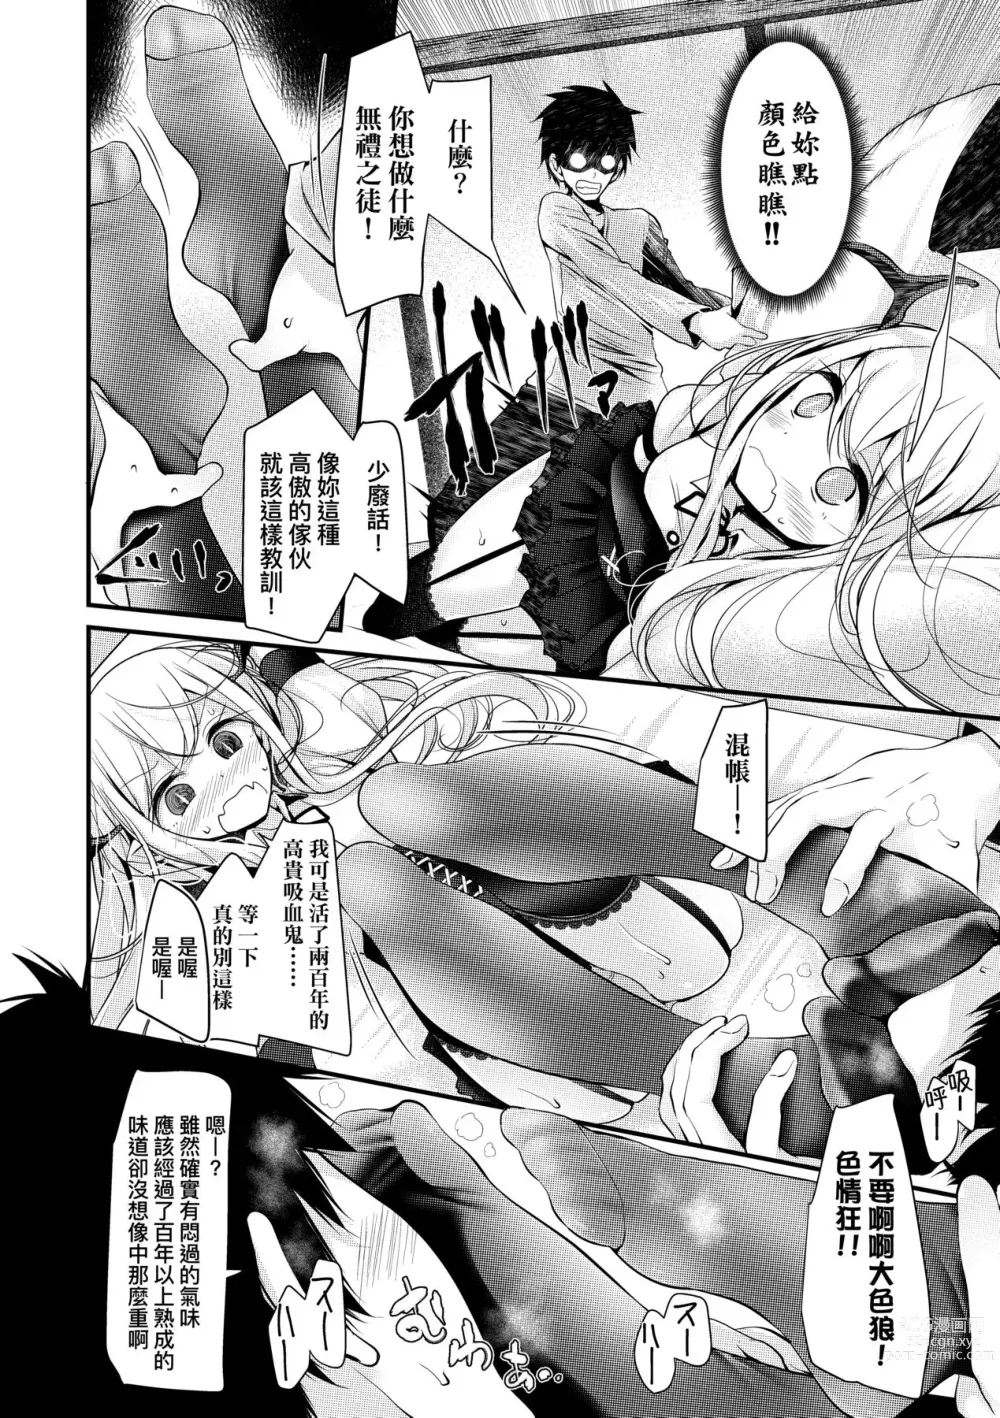 Page 29 of manga 年上的少女你也很喜歡吧? (decensored)